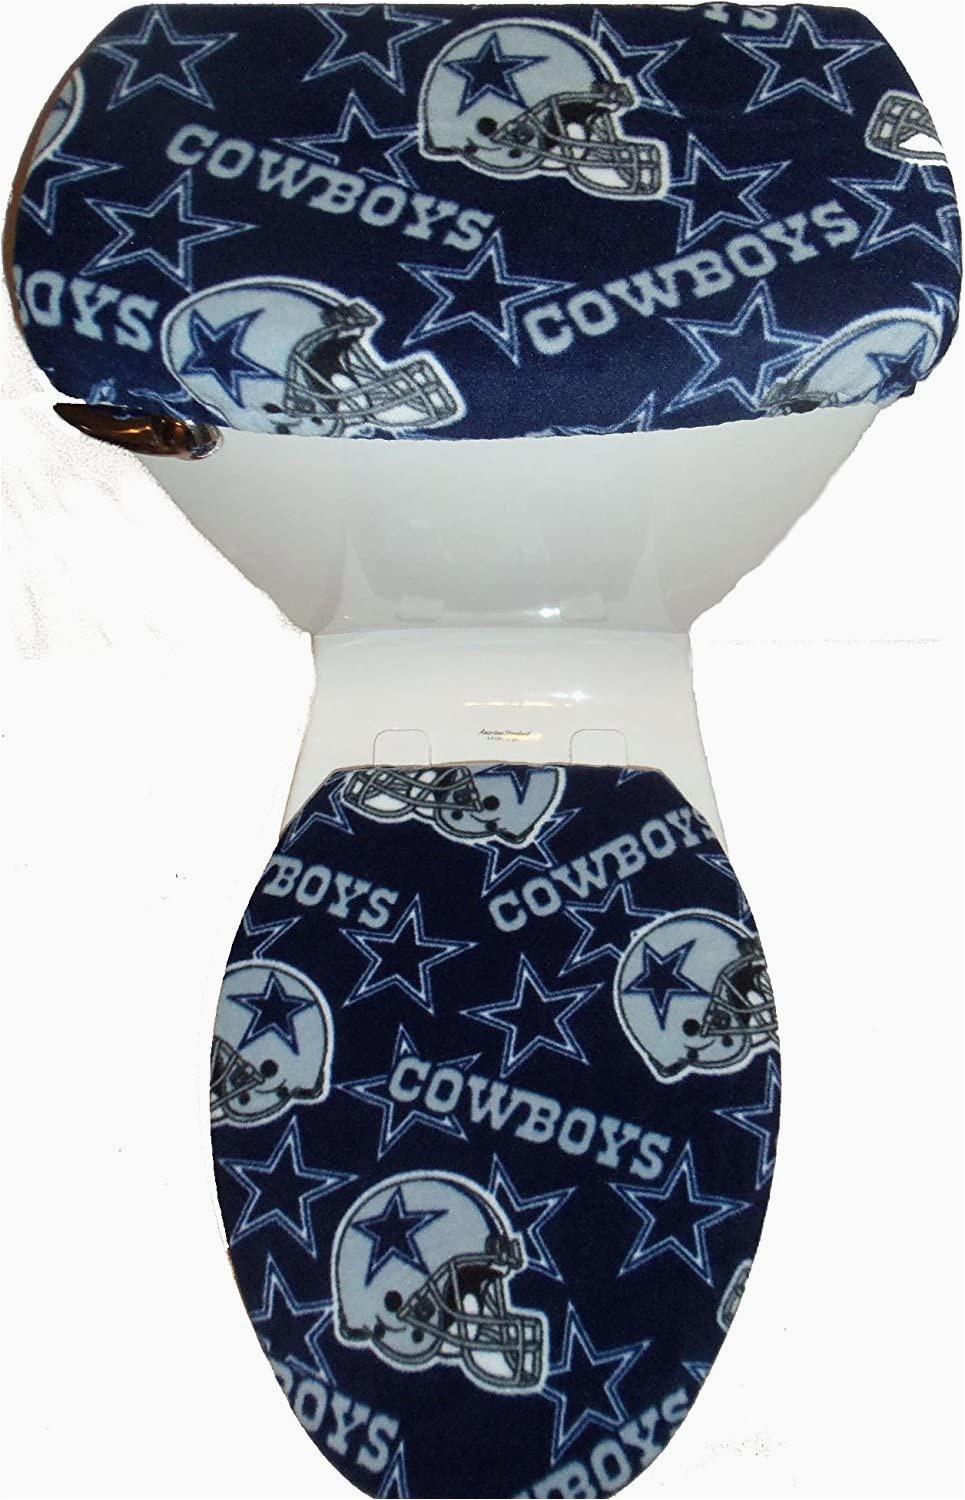 Dallas Cowboys Bathroom Rugs Rock N Deals Seller Fleece Fabric toilet Seat Cover Set Bathroom Accessories